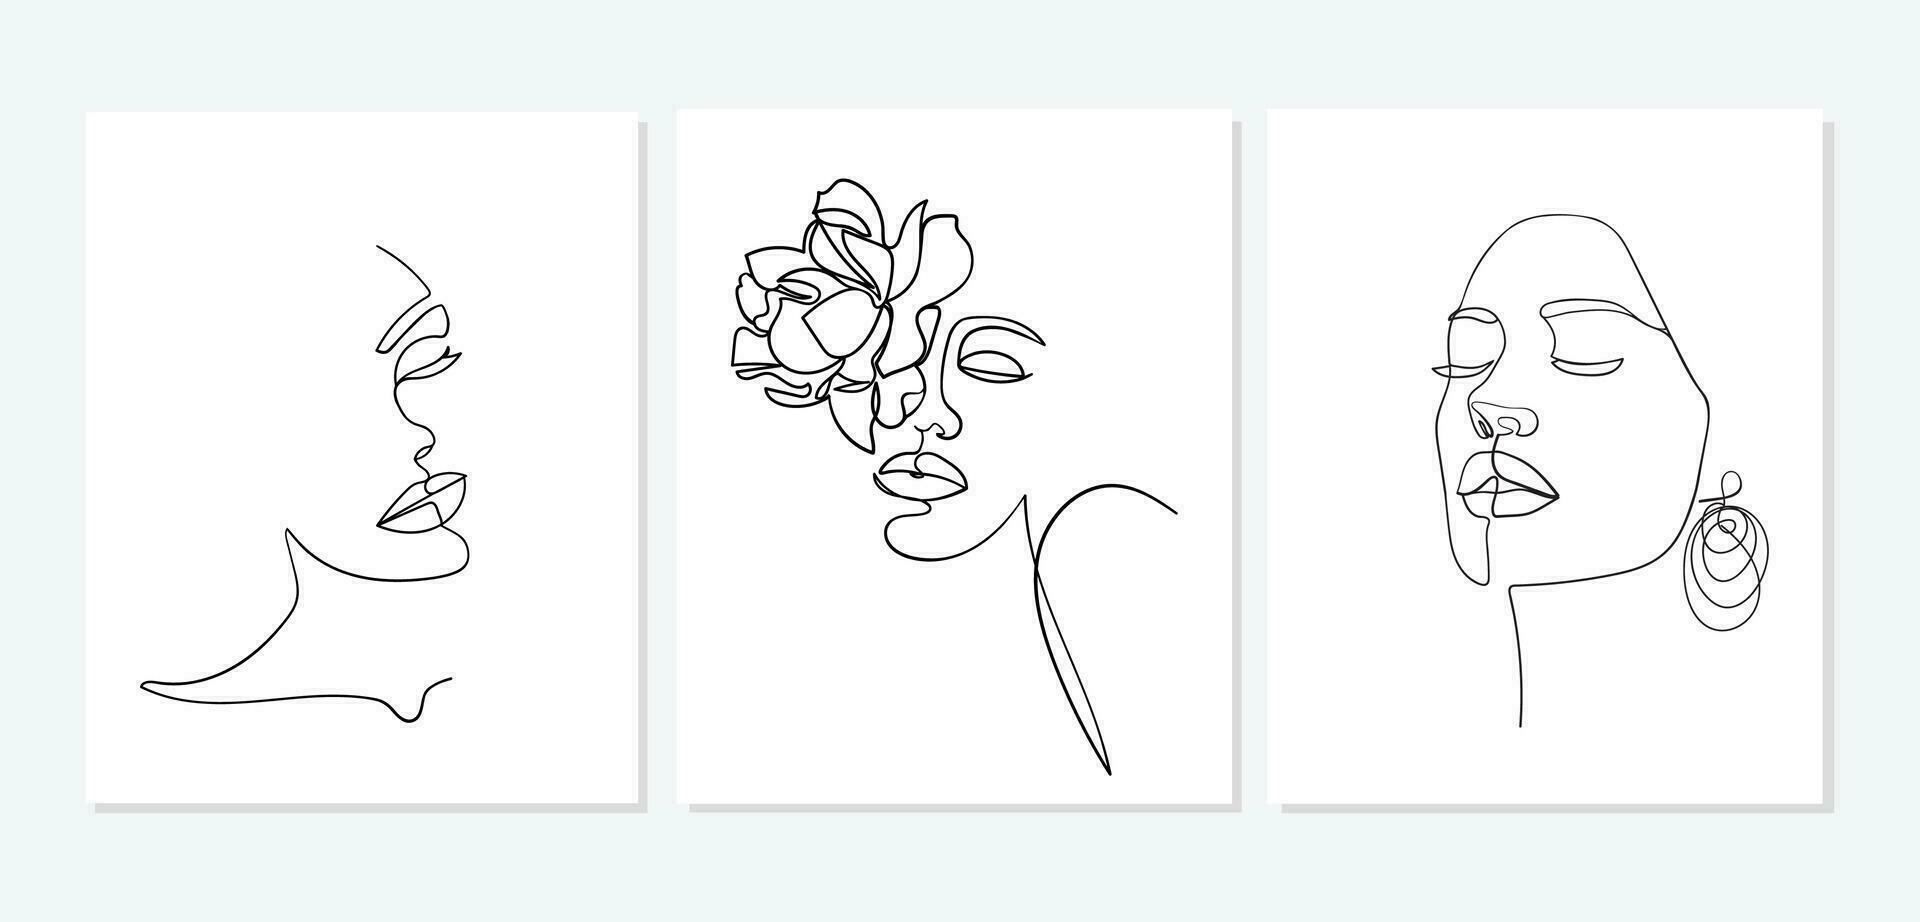 reeks van gezichten. gemakkelijk, minimalistische vector illustratie van mooi vrouw gezicht. lijn tekening.